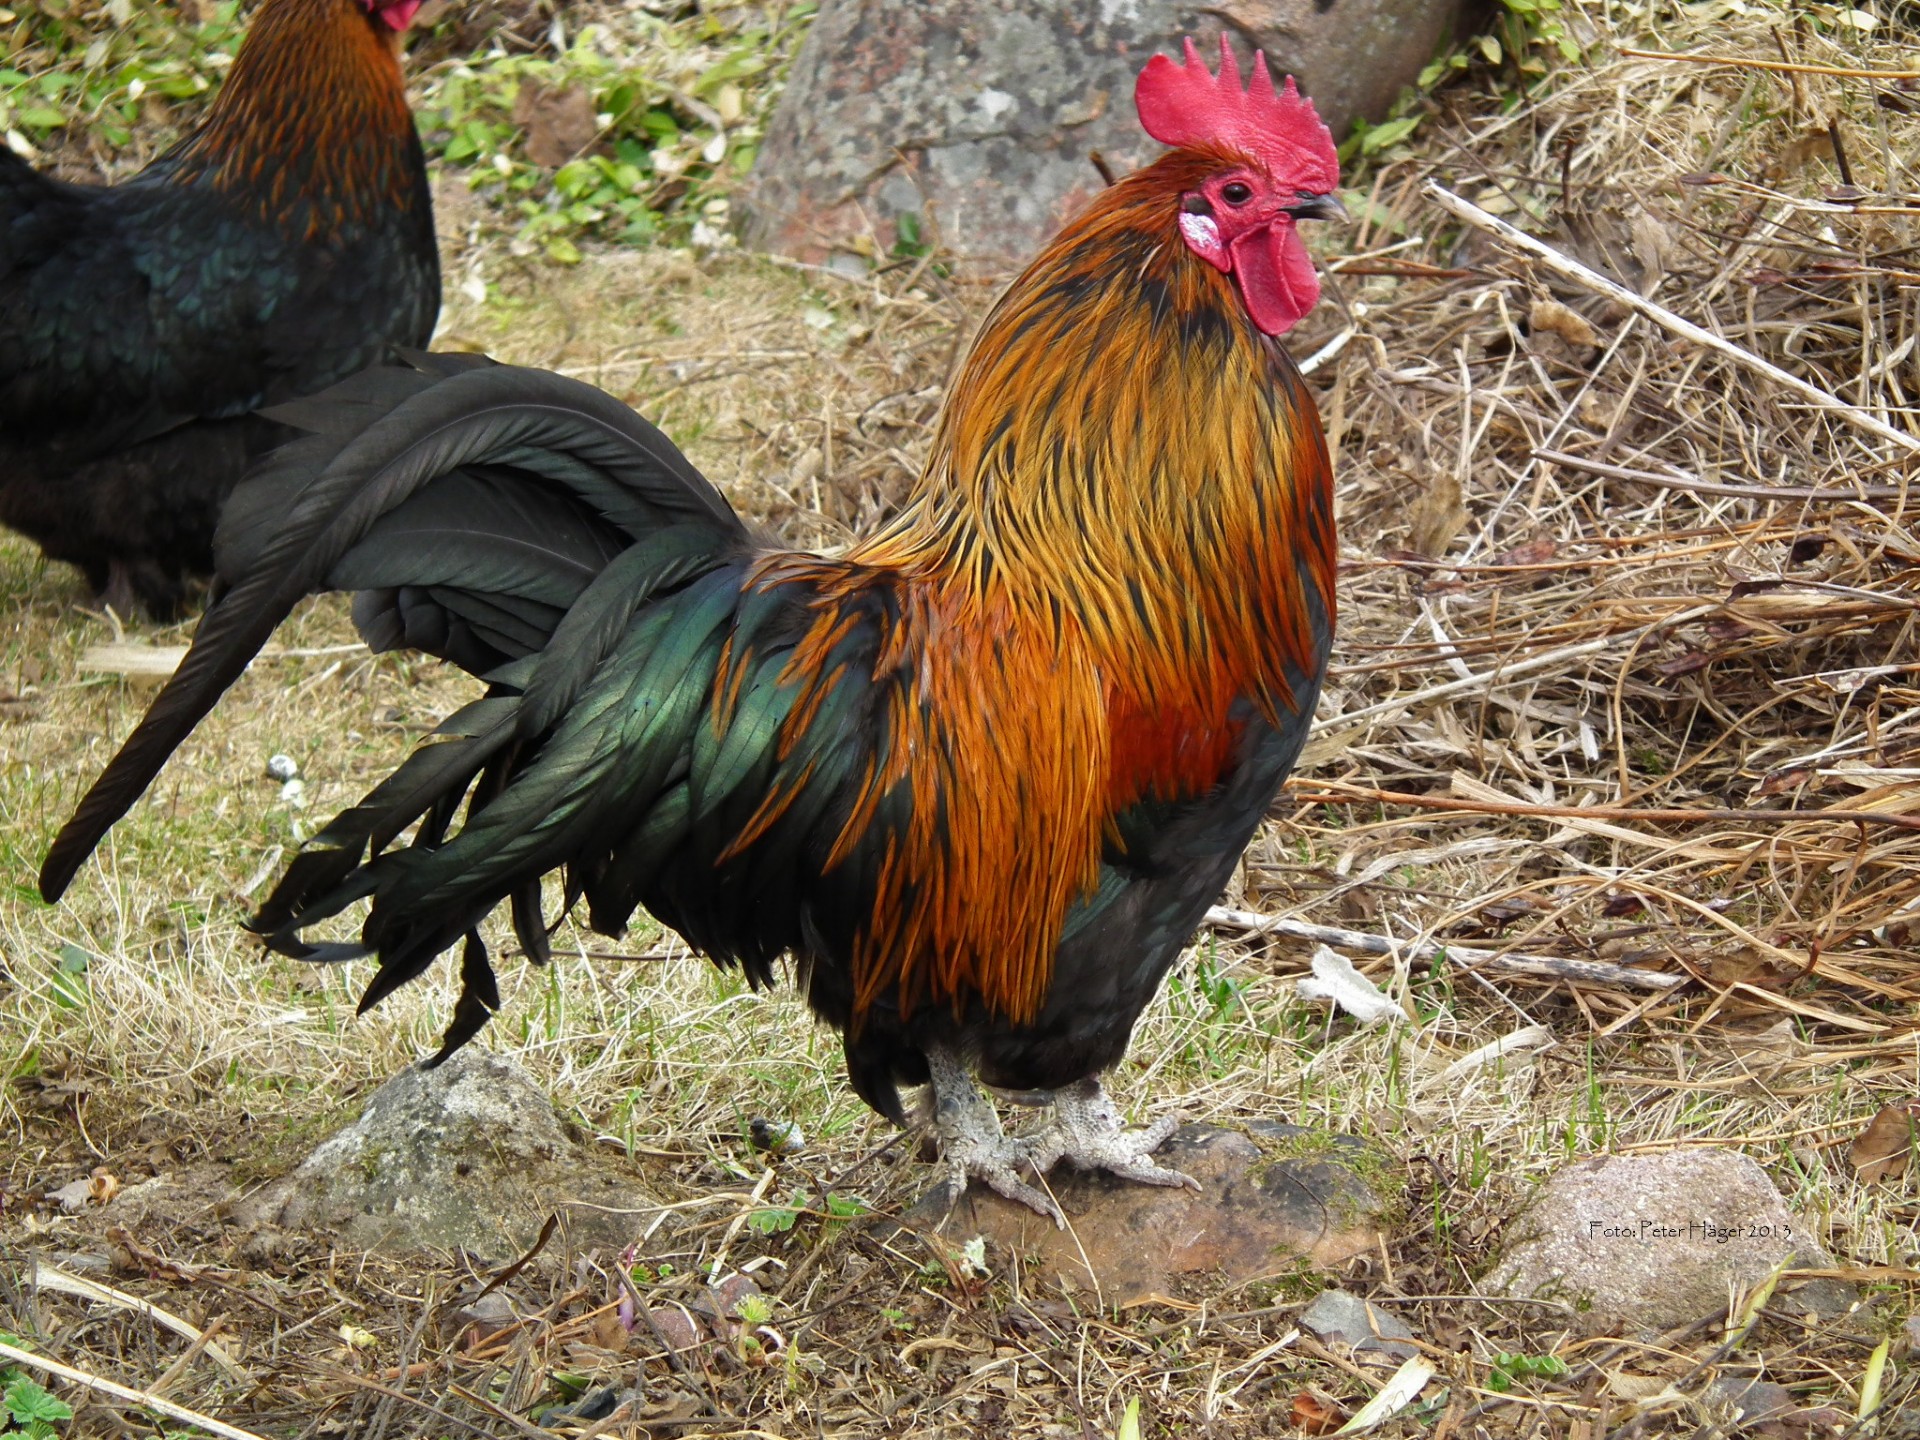 公鸡 Gallinacé 亚洲公鸡 - Pixabay上的免费照片 - Pixabay